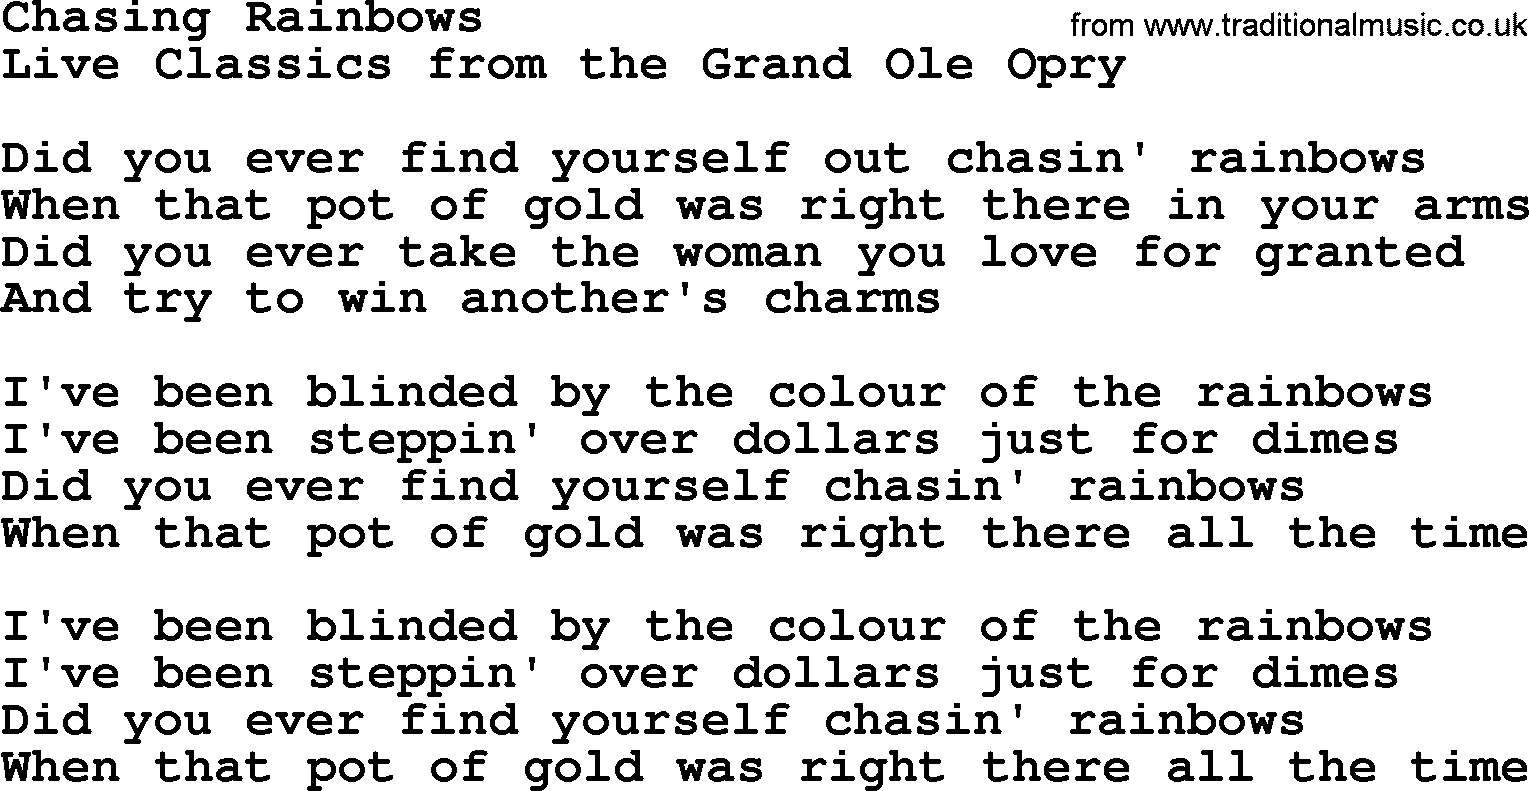 Marty Robbins song: Chasing Rainbows, lyrics